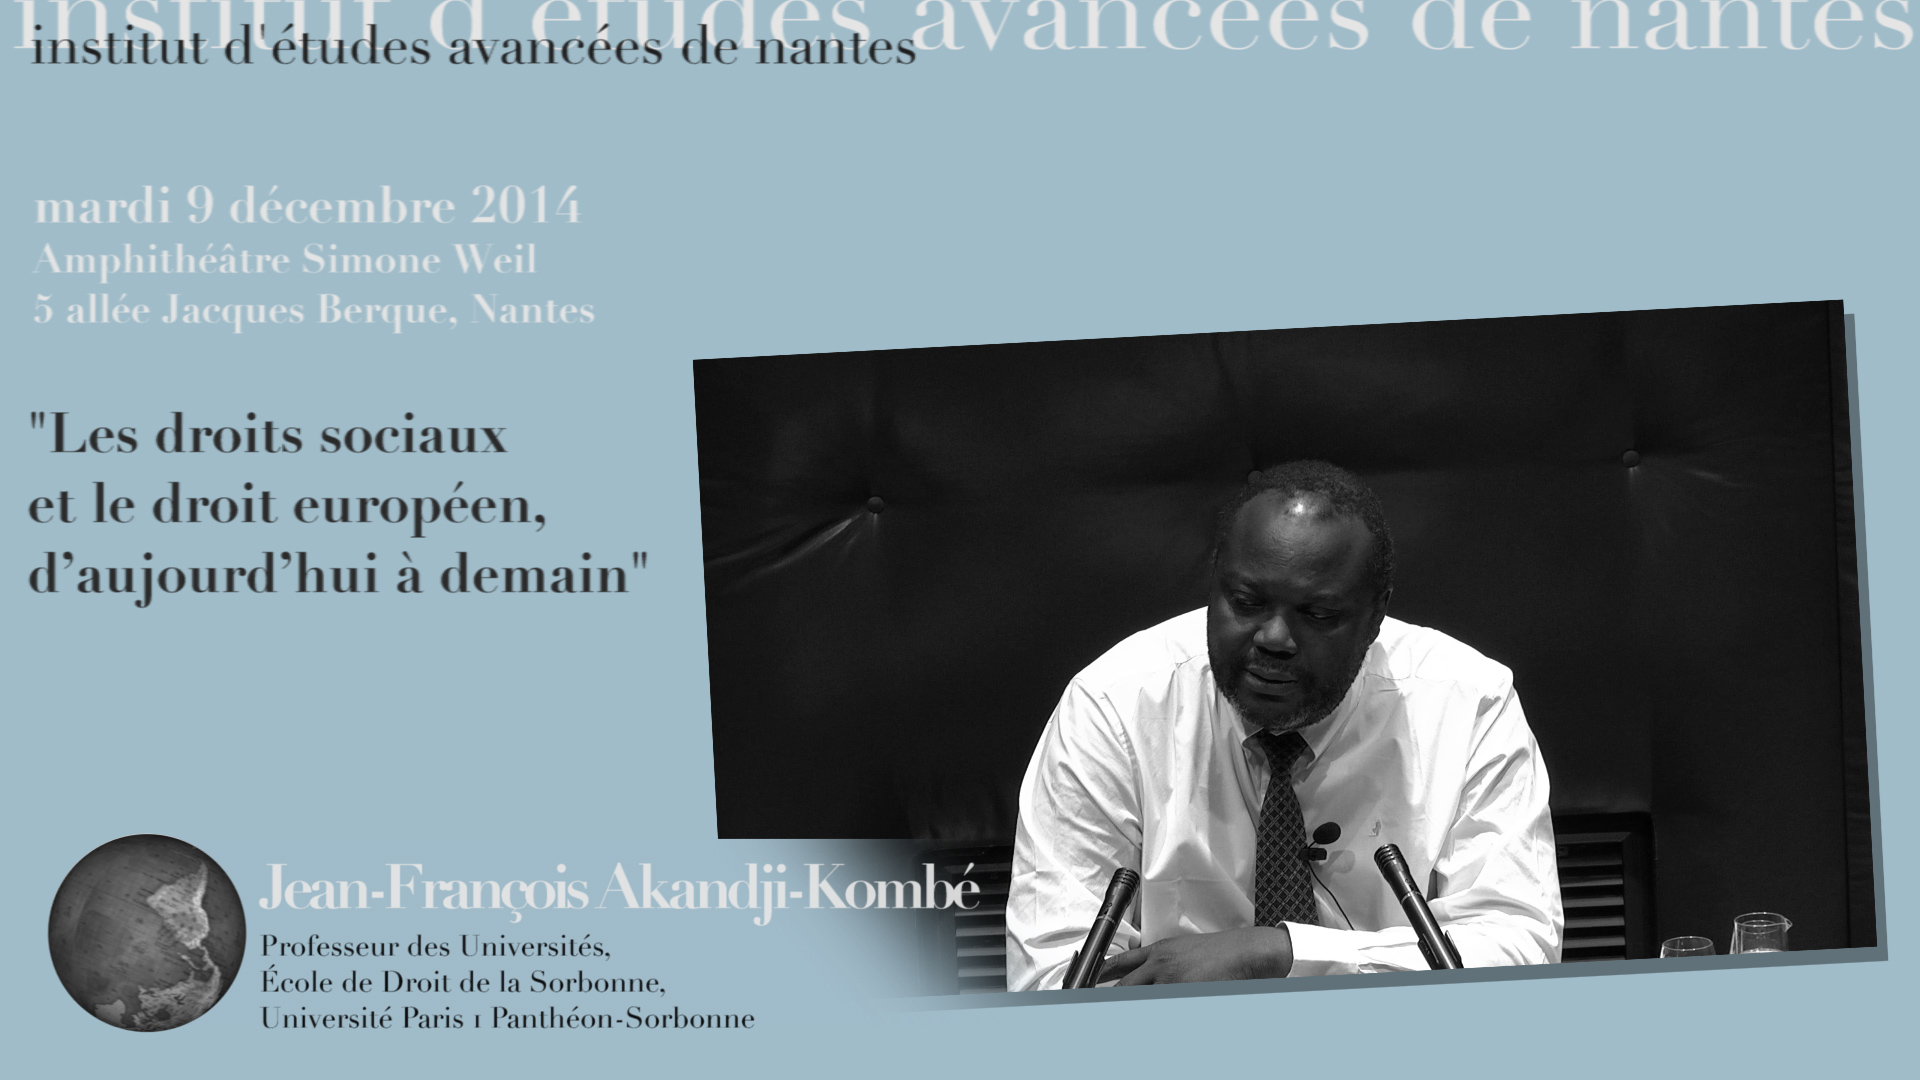 Jean-François Akandji-Kombé : "Les droits sociaux et le droit européen, d’aujourd’hui à demain"